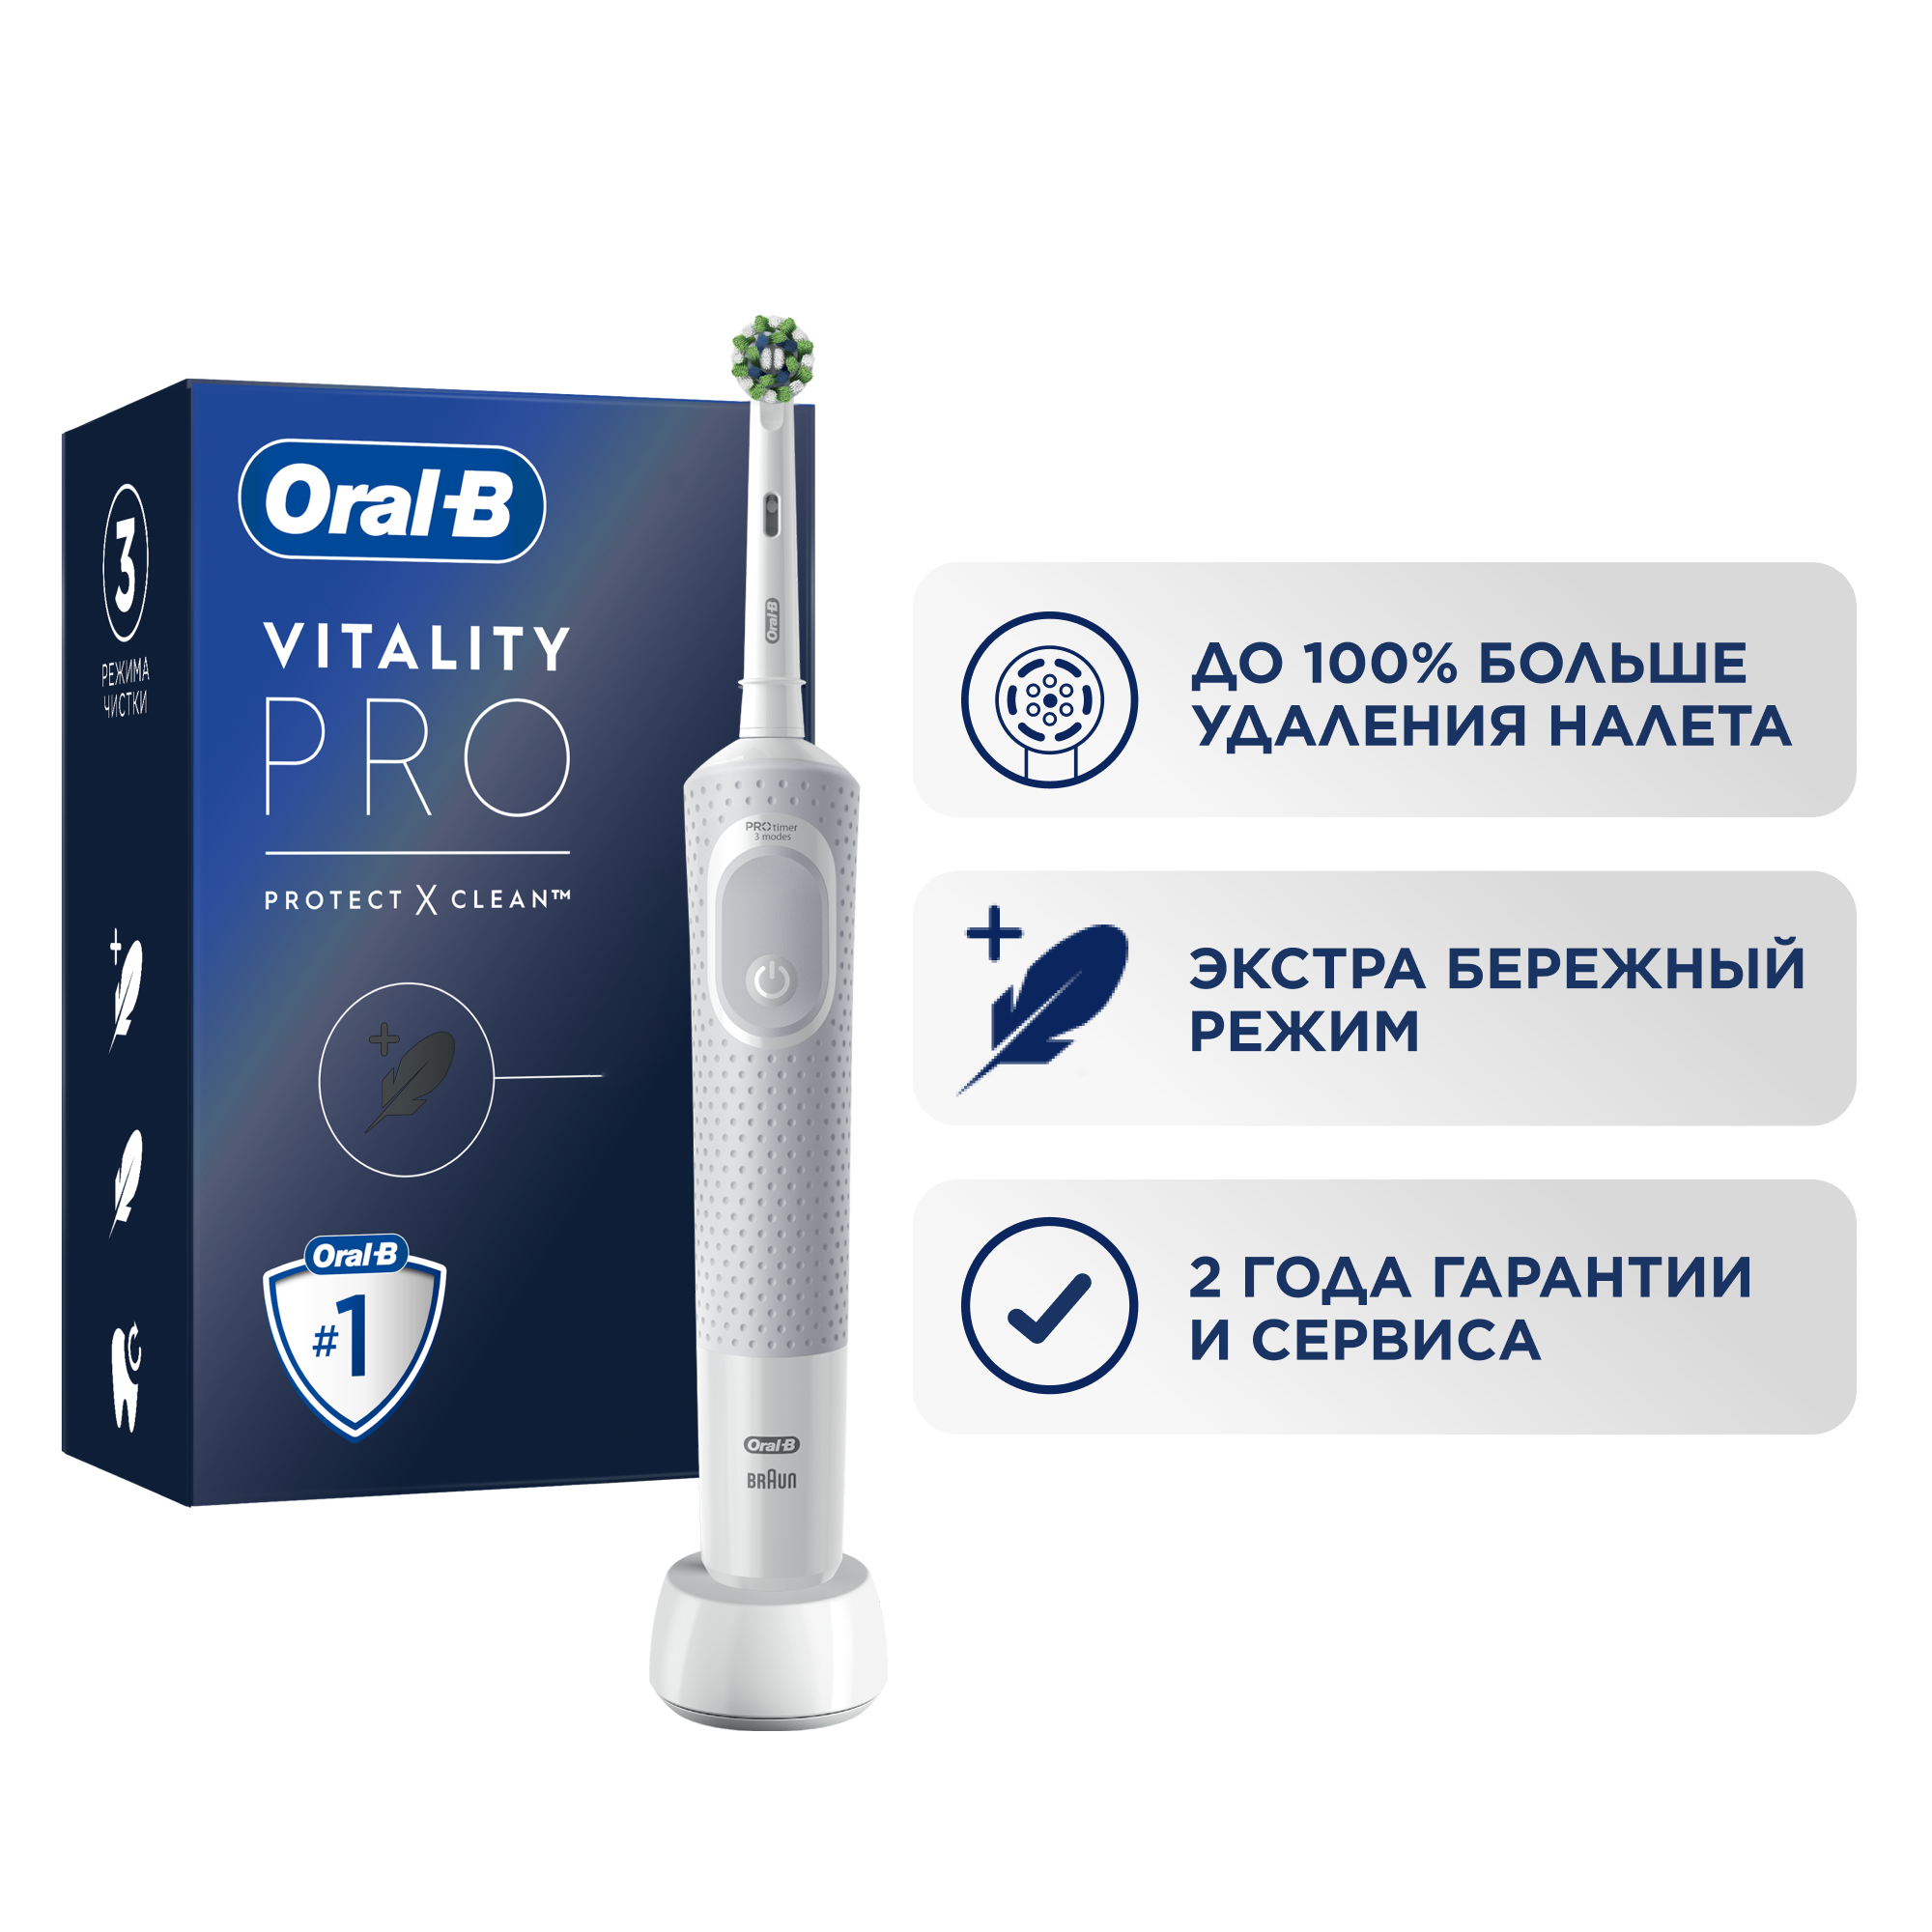 Электрическая зубная щетка Oral-B Vitality Pro Protect X Clean white .